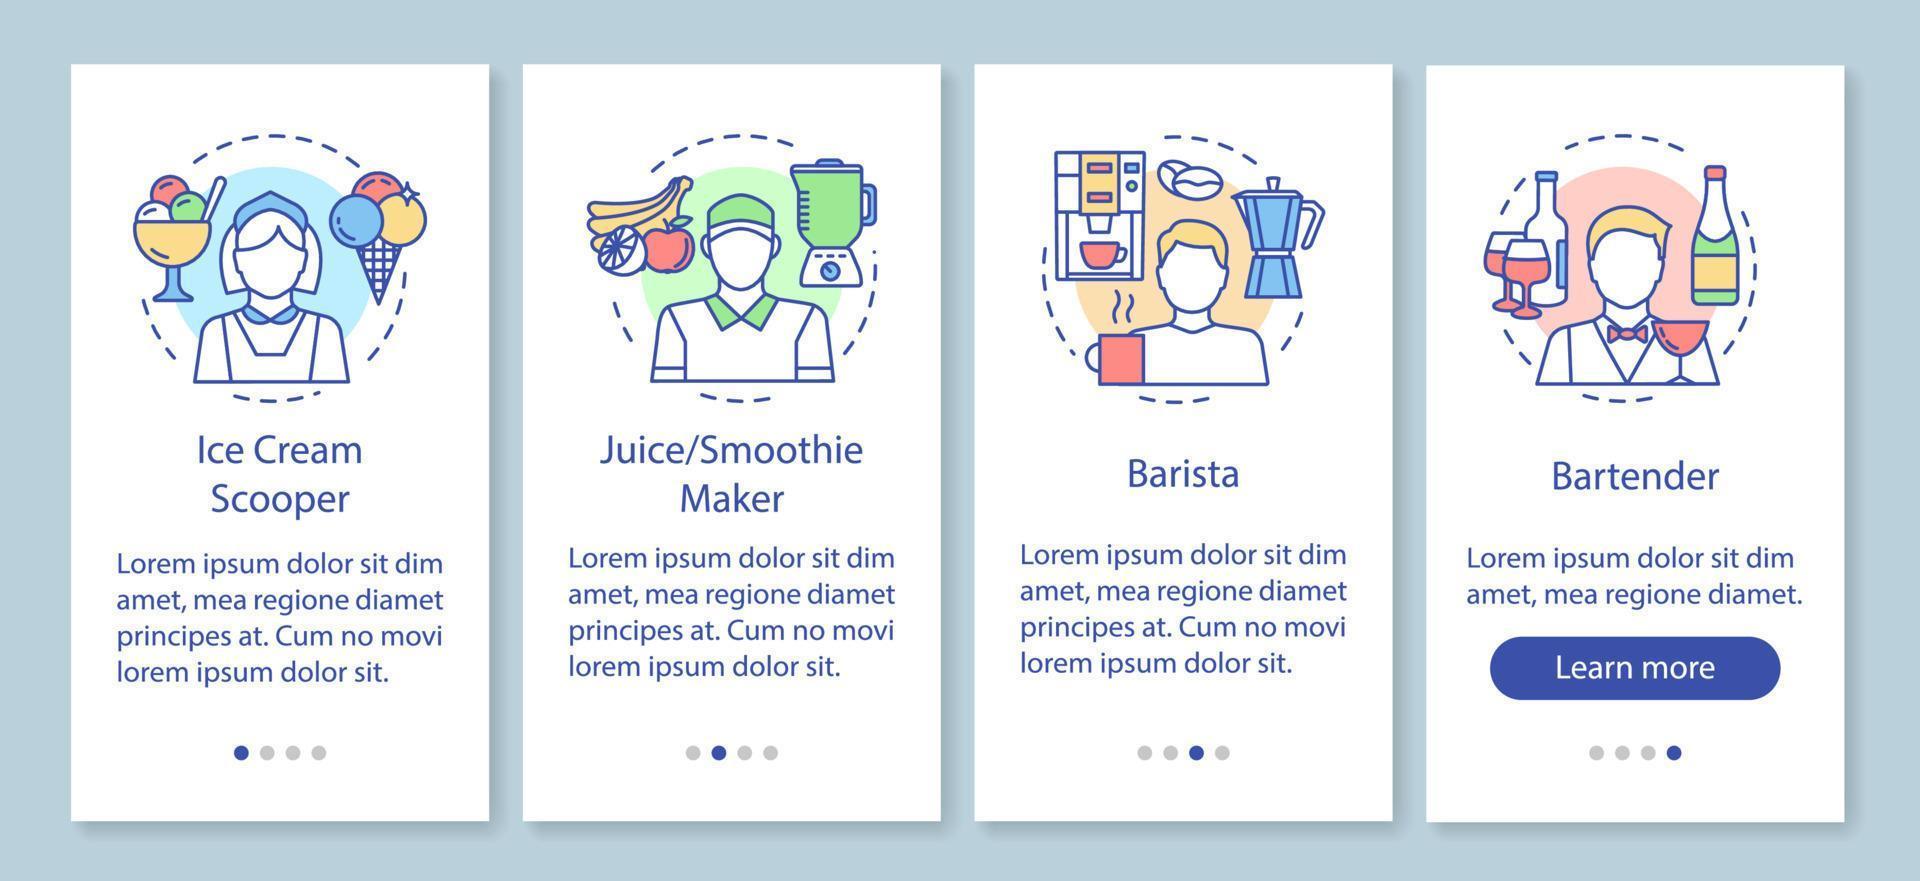 cafe, fast-food-industrie teilzeitjob onboarding mobiler app-seitenbildschirm mit linearen konzepten. barista, barkeeper walkthrough schritte grafische anweisung. ux, ui, gui-vektorvorlage mit illustrationen vektor